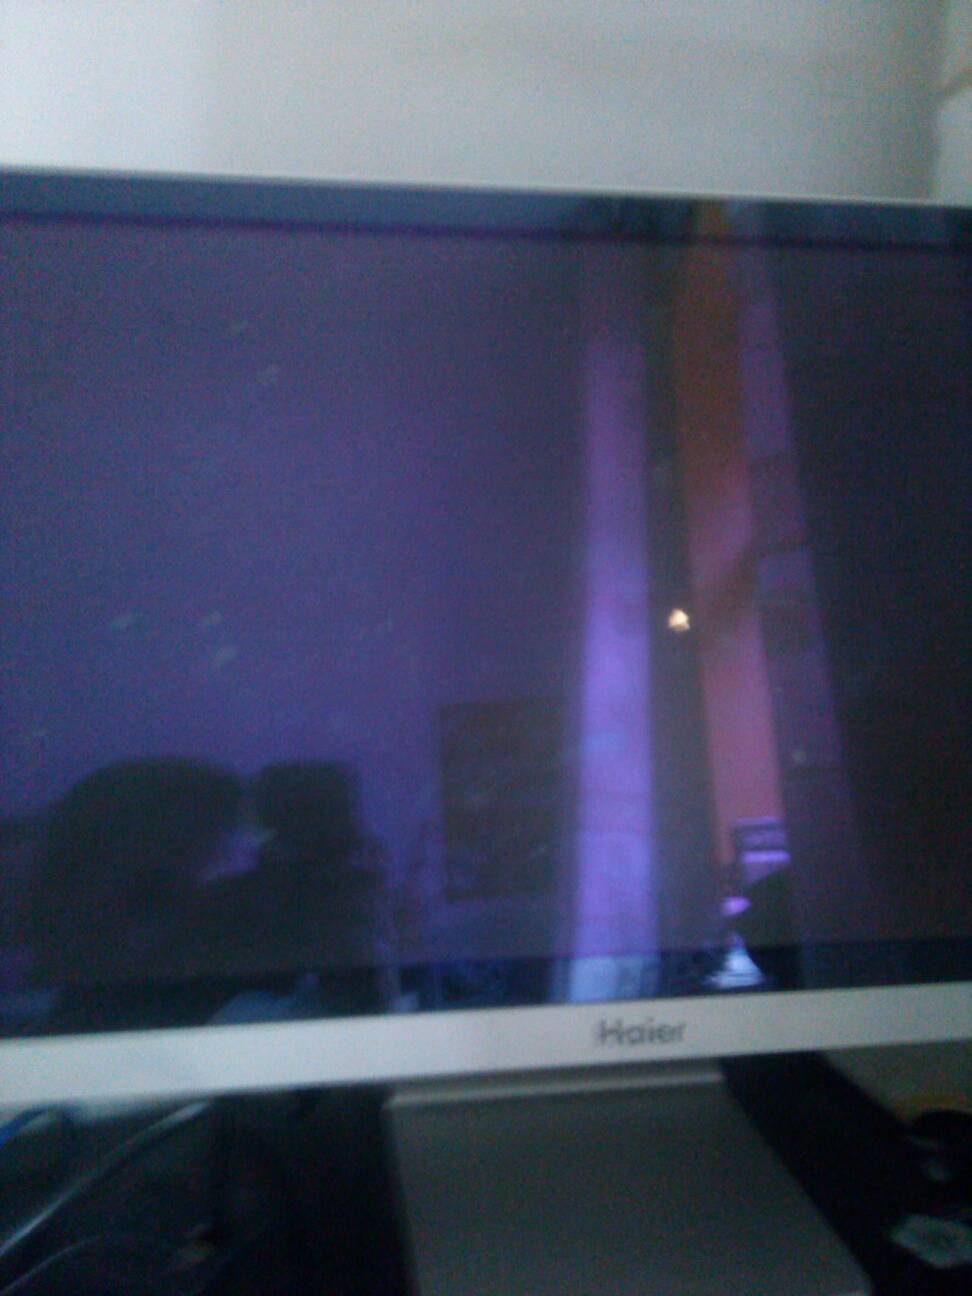 海尔电视开机后老是黑屏上显示gitv是怎么回事?